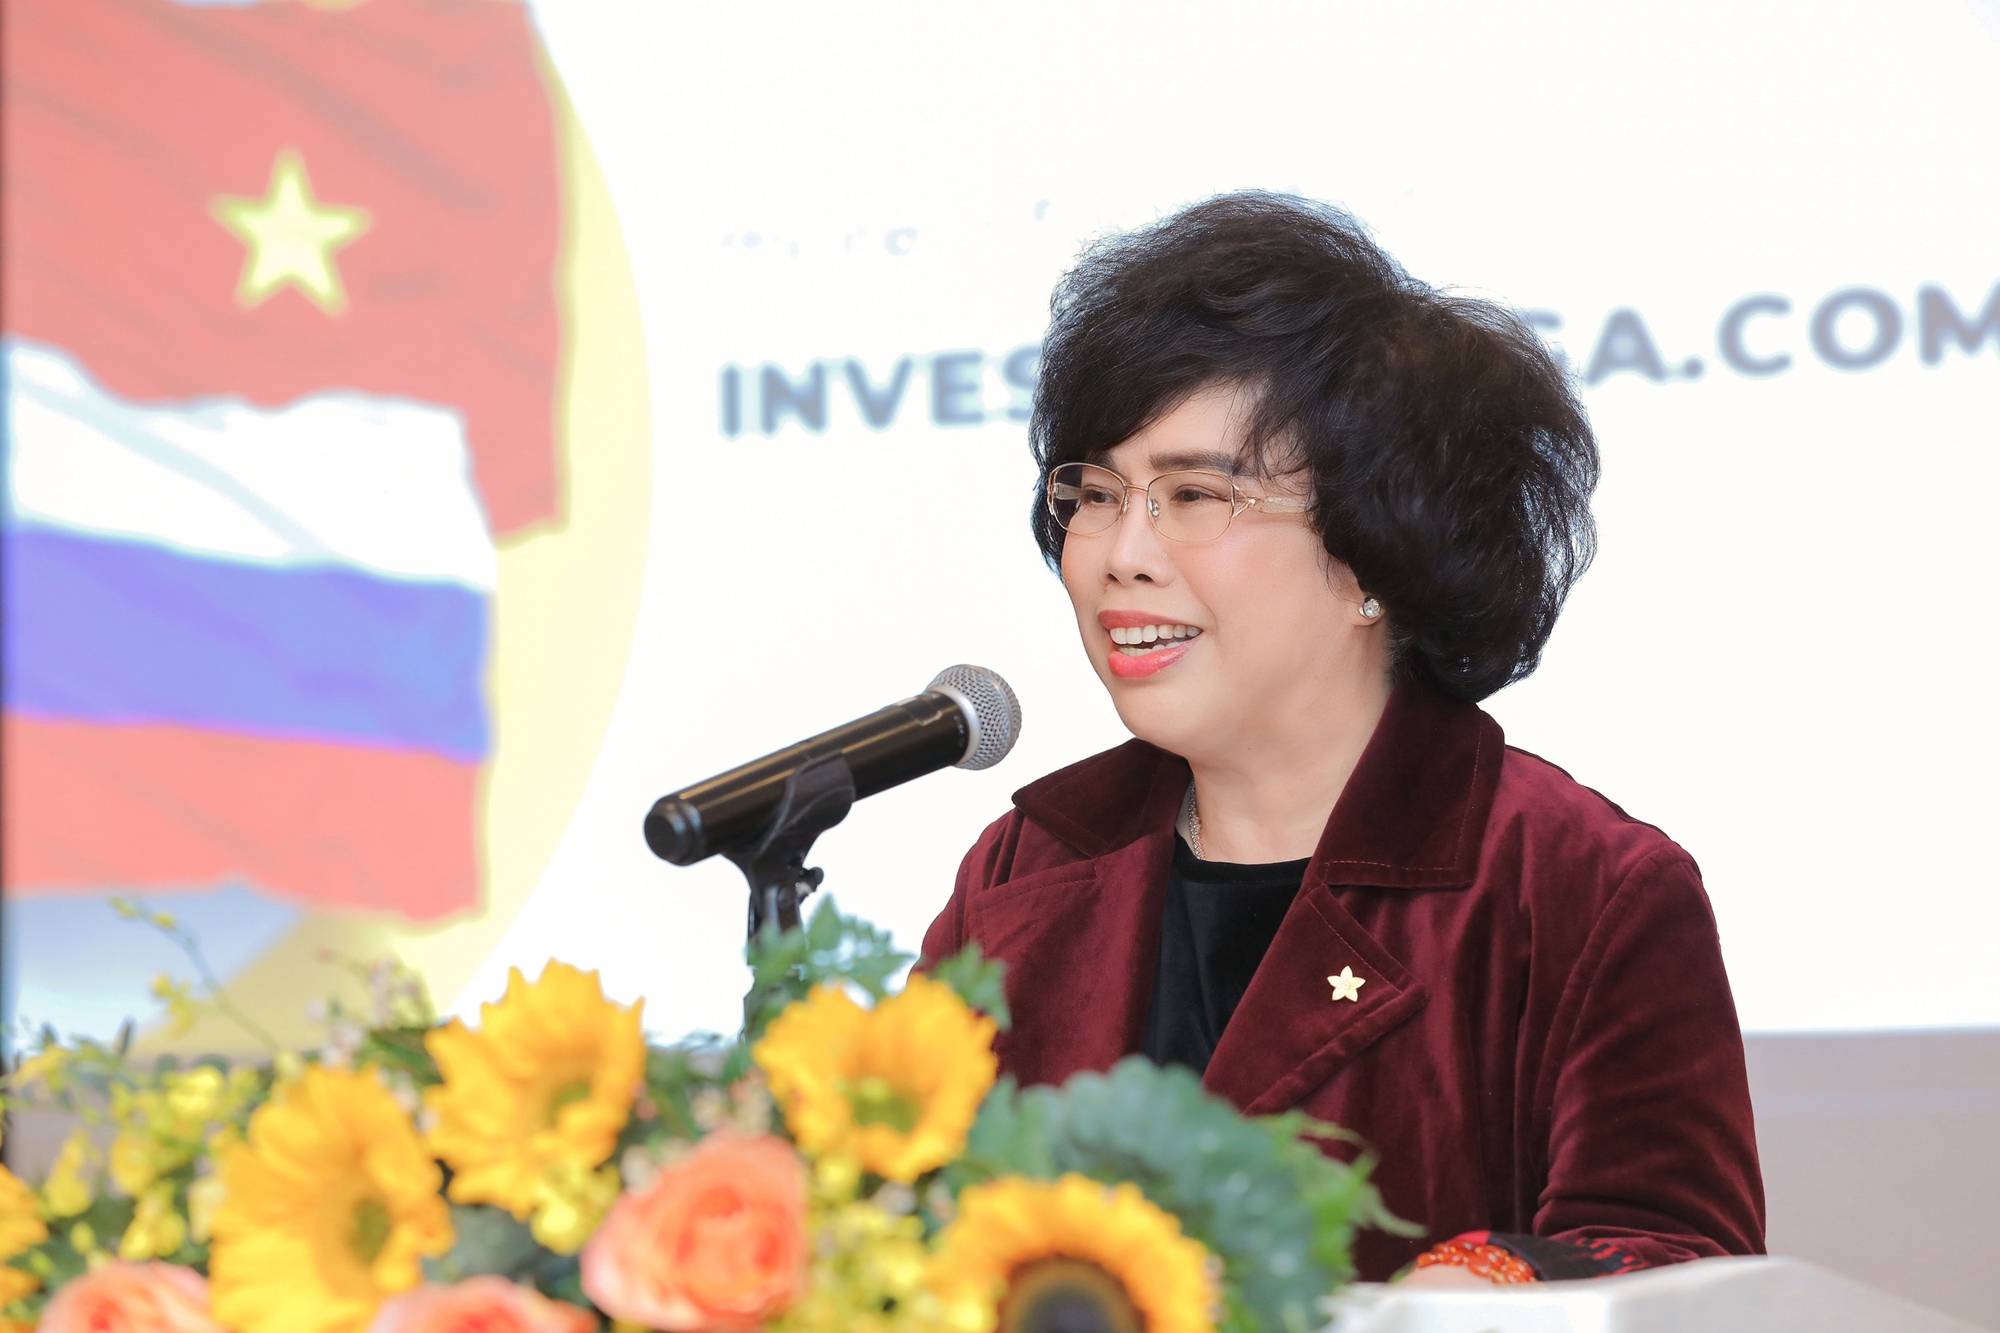 Thống đốc tỉnh Kaluga (Liên bang Nga) gặp gỡ Hiệp hội Nữ doanh nhân Việt Nam và Tập đoàn TH - Ảnh 1.